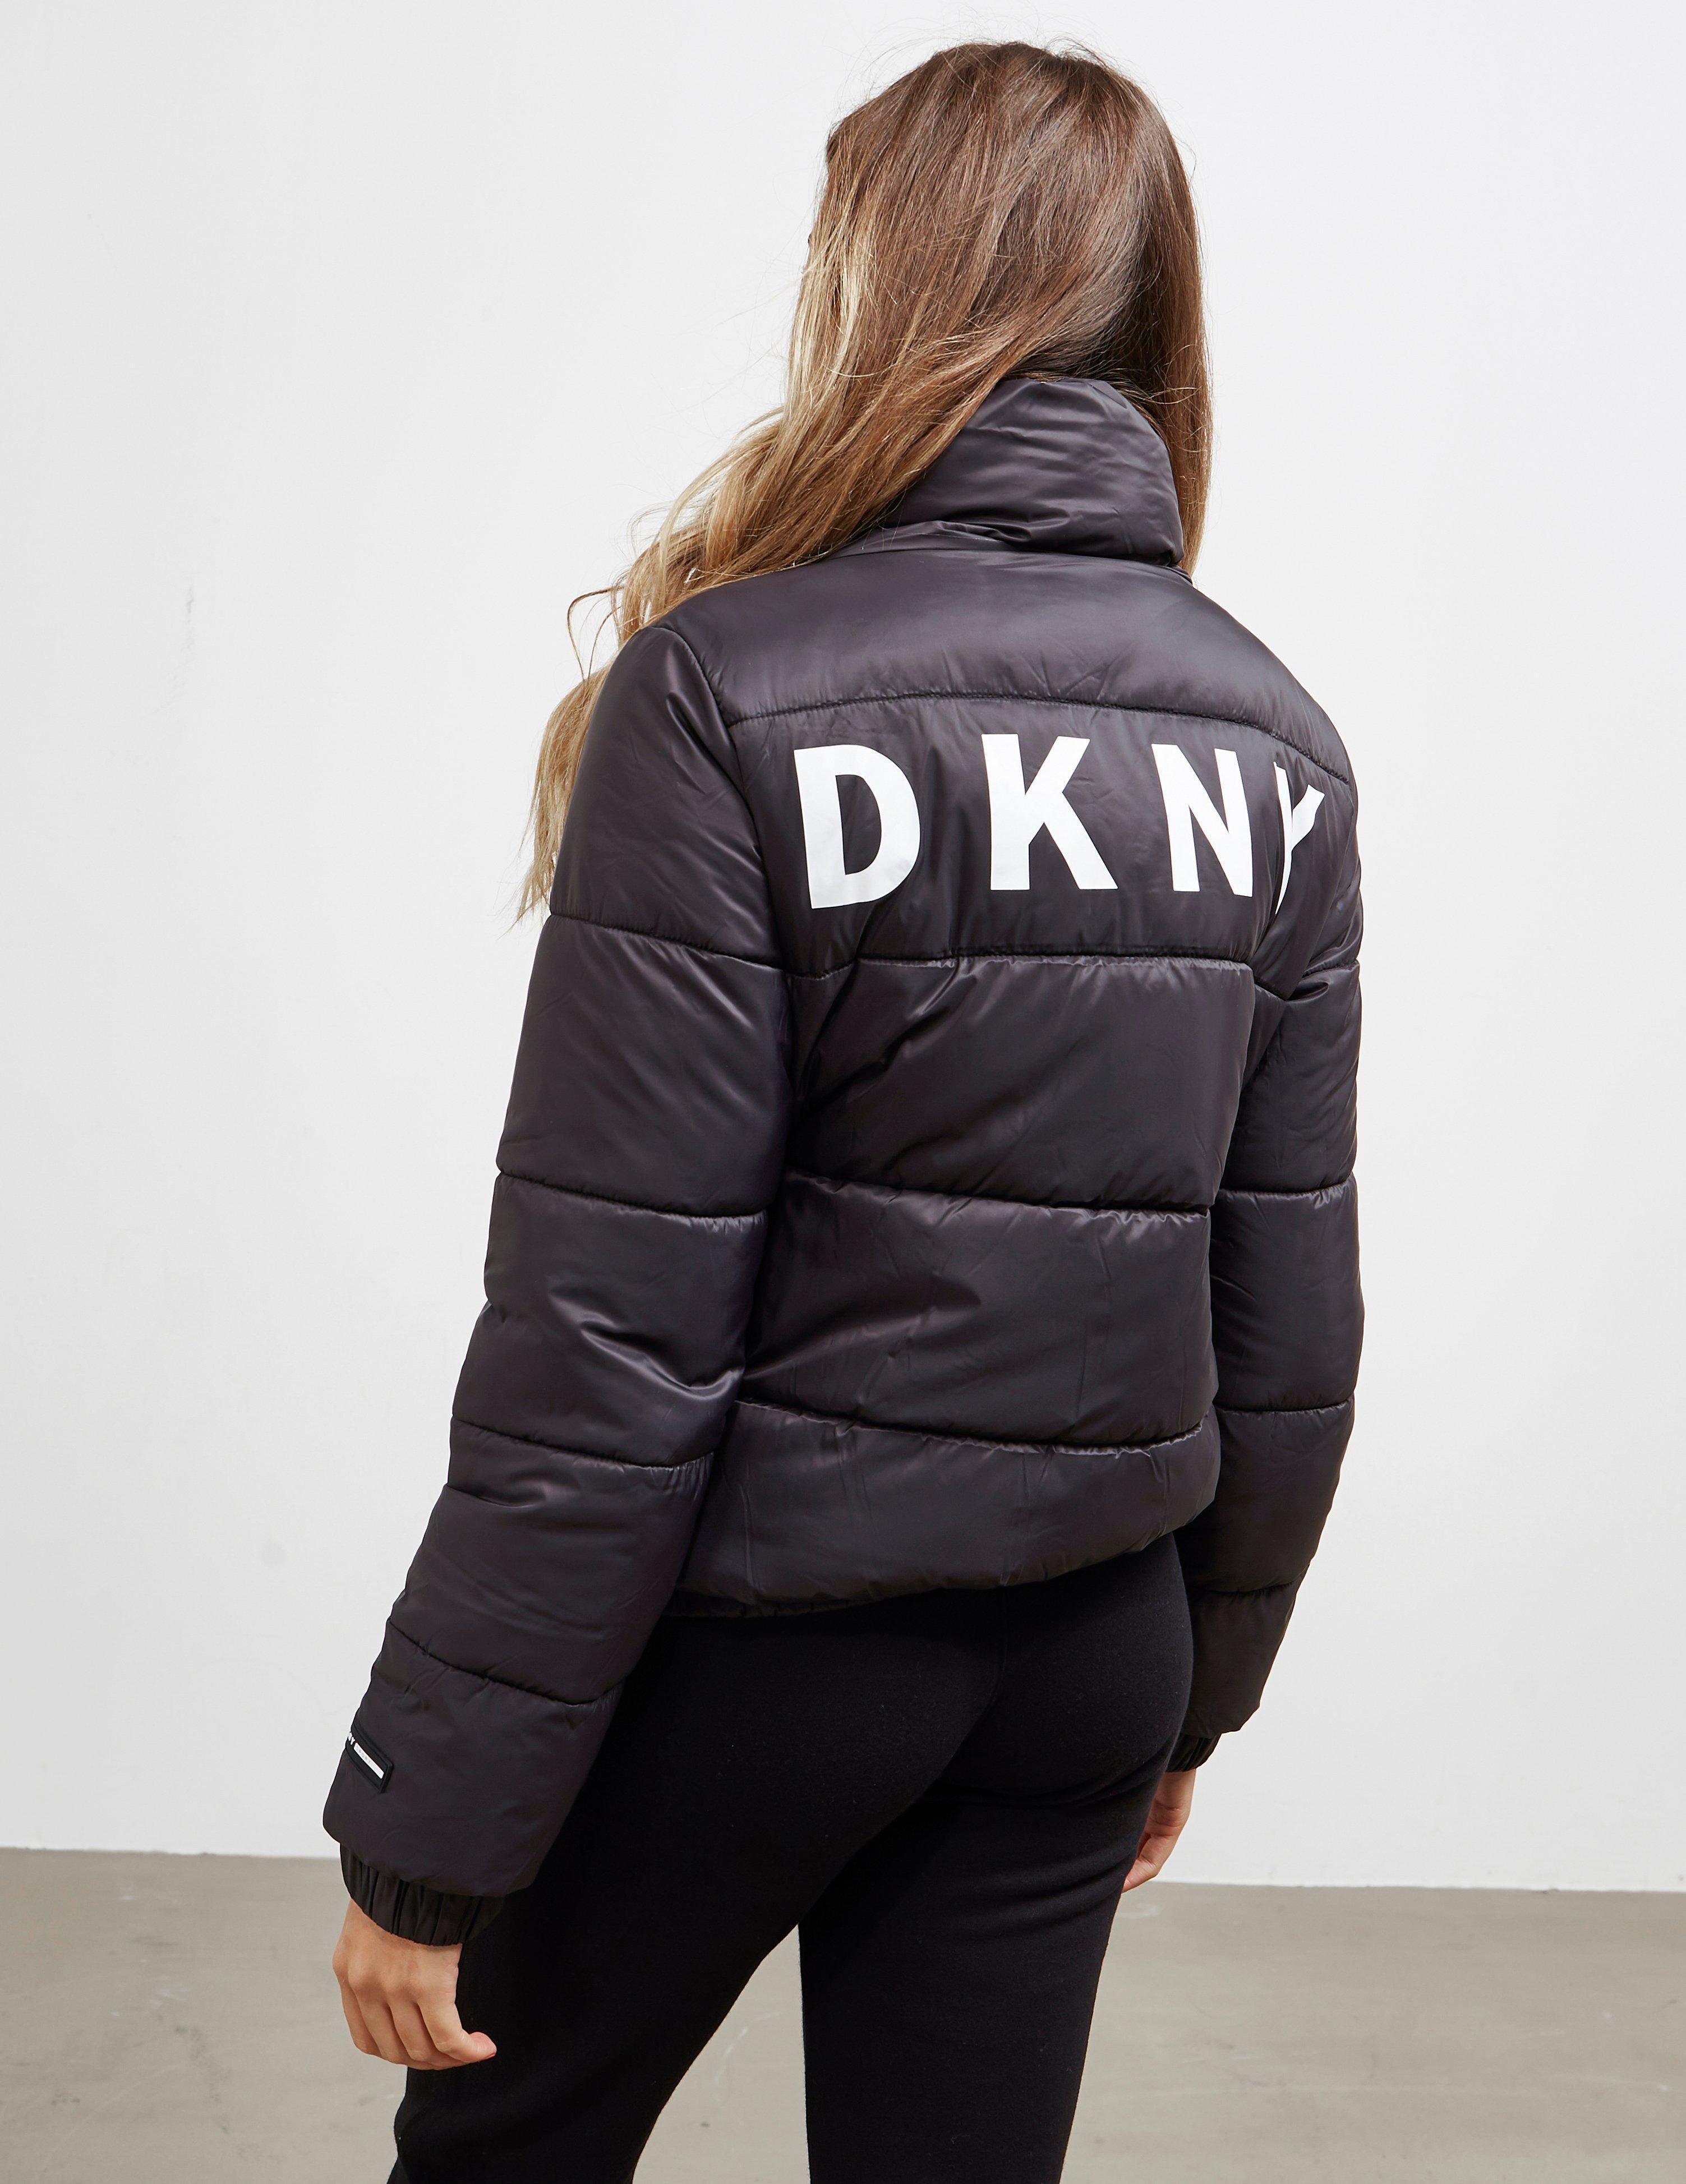 dkny sport jacket